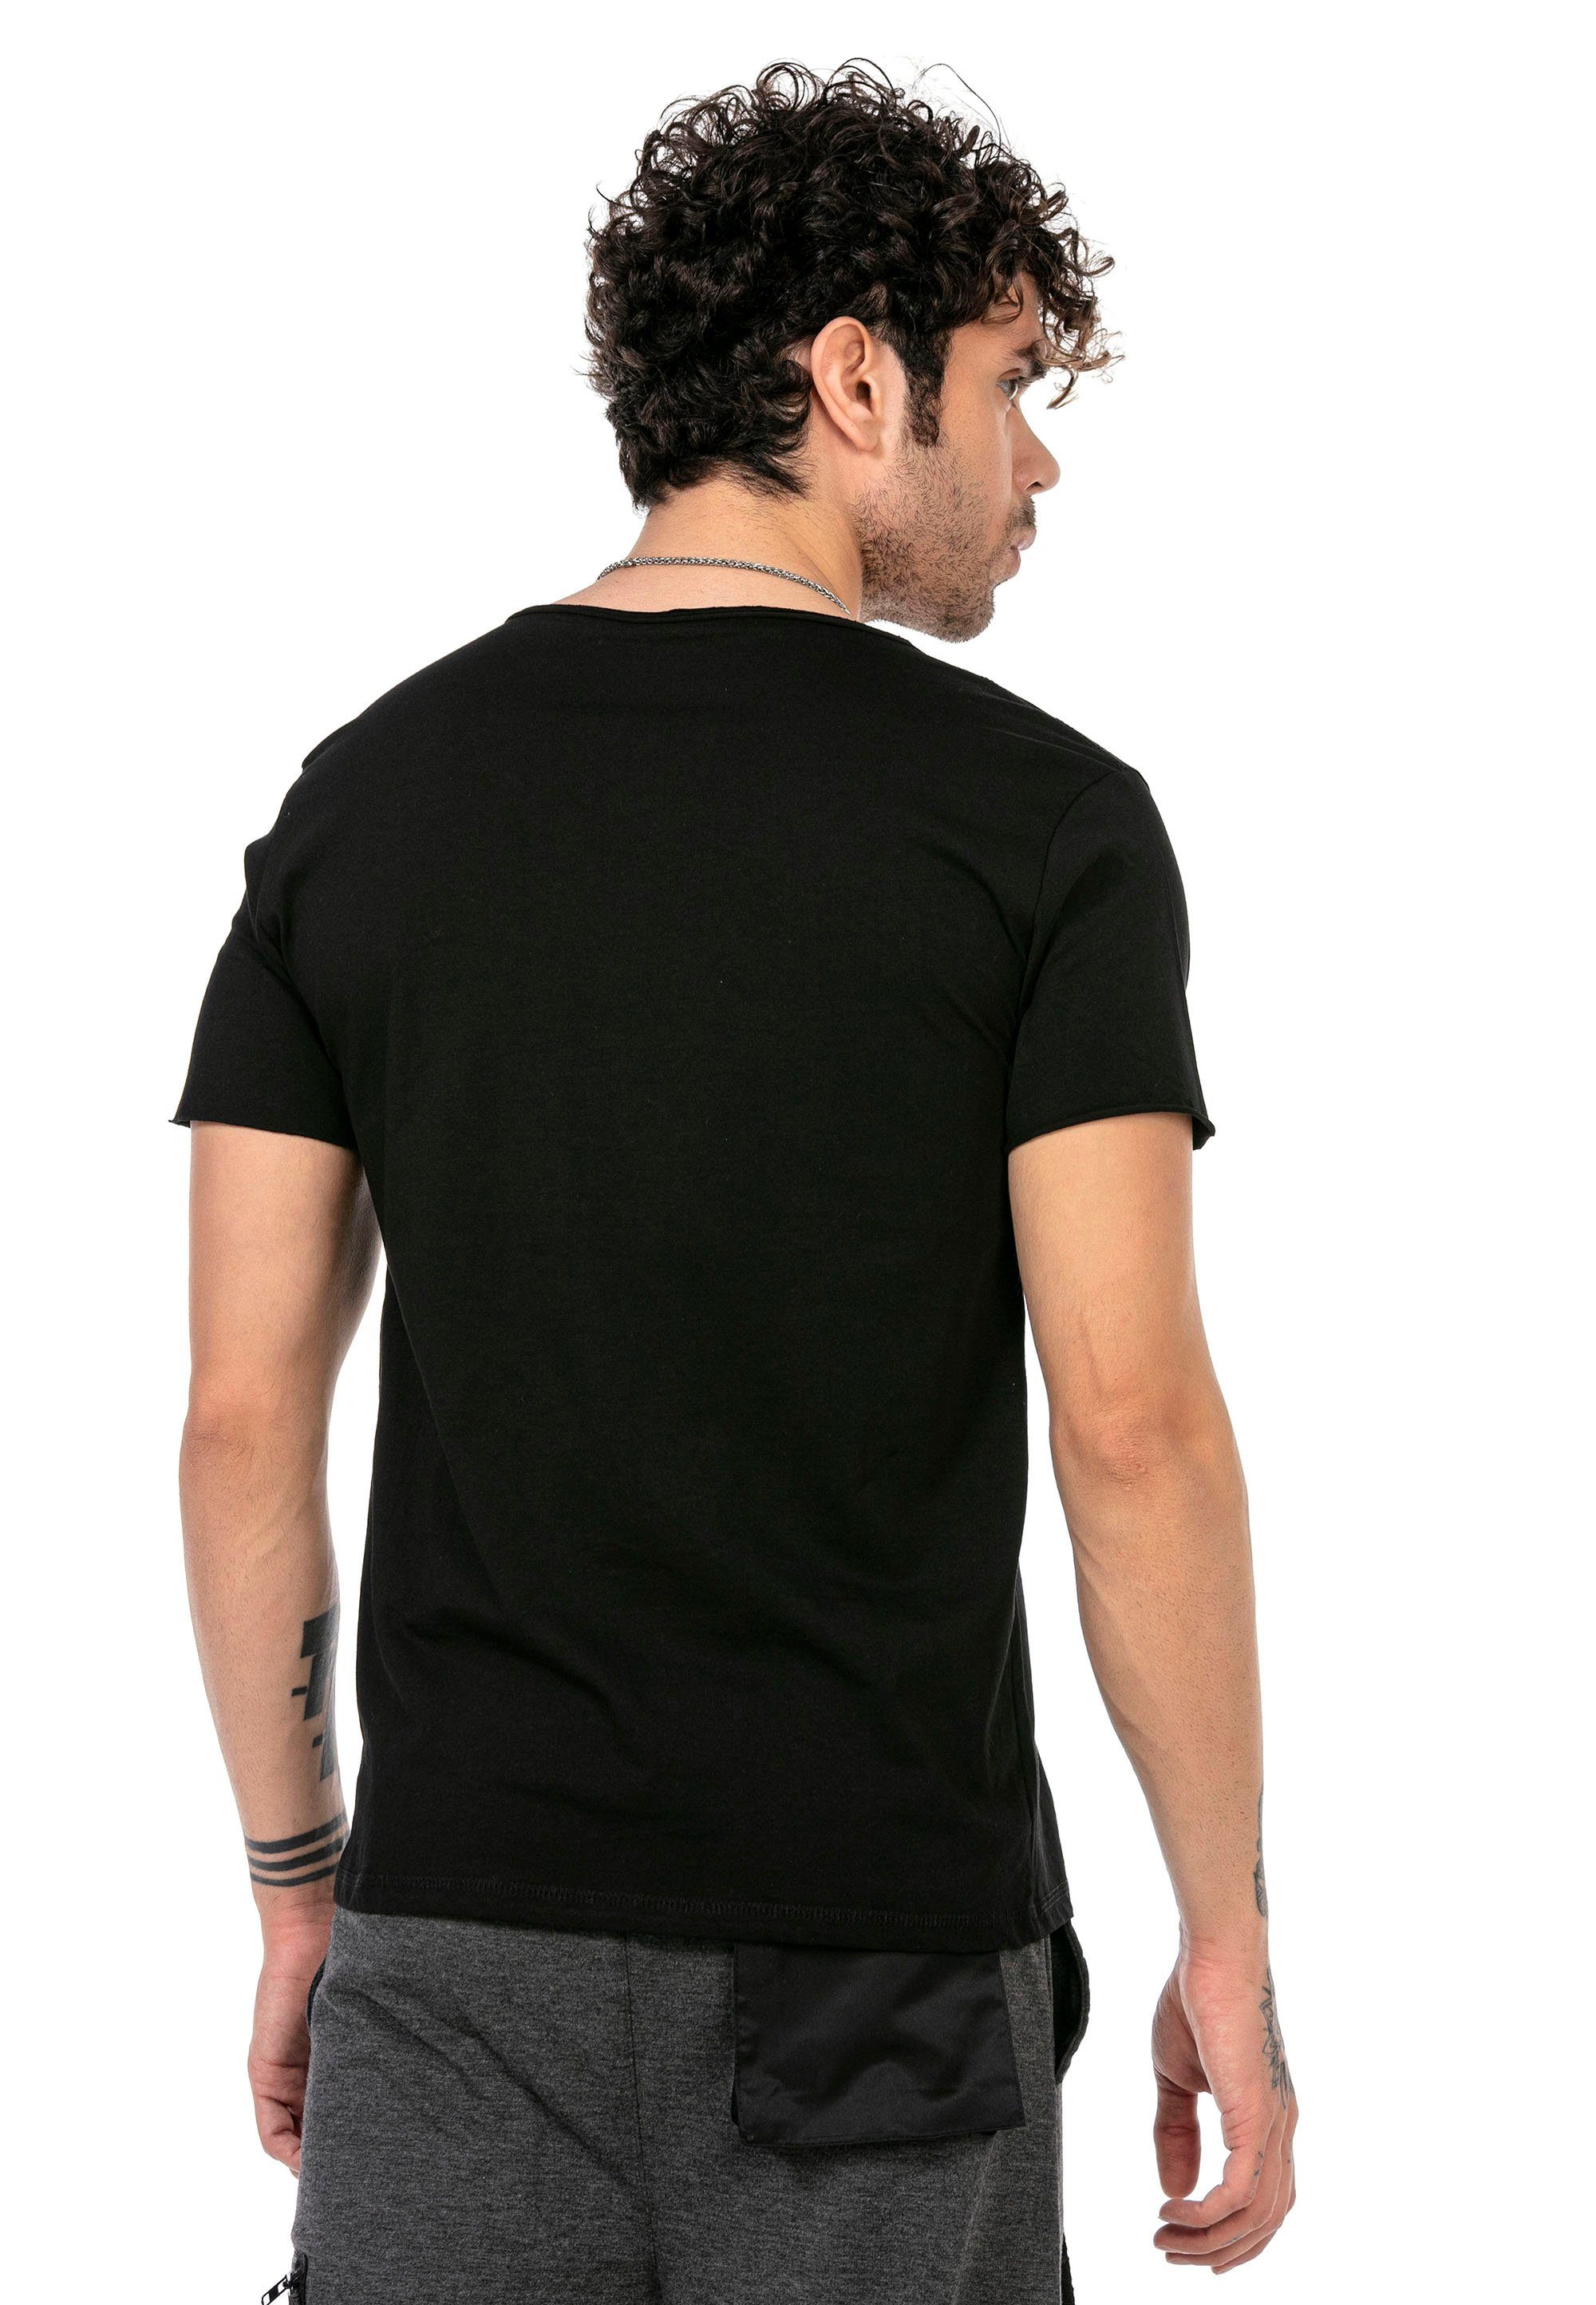 Columbia in T-Shirt schwarz schlichtem Design RedBridge